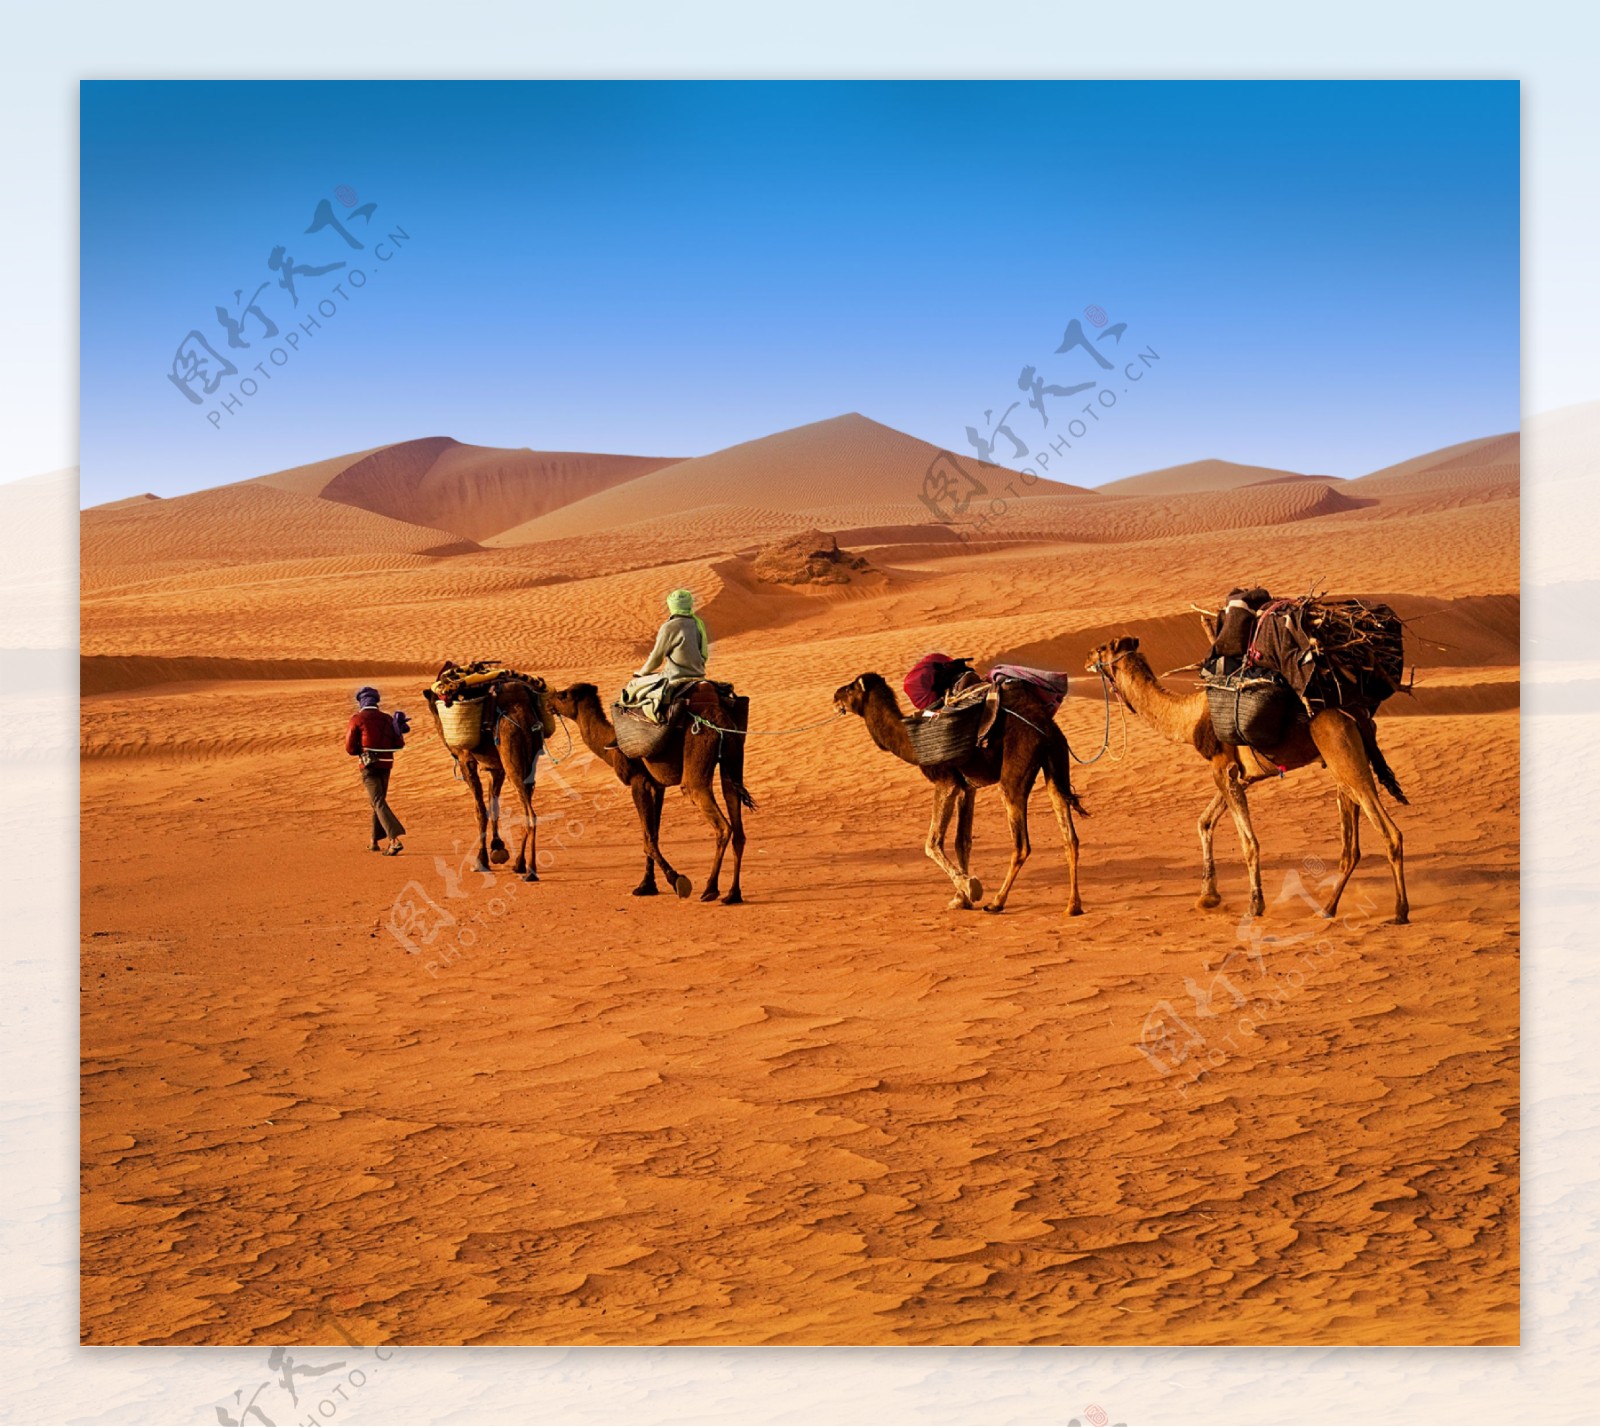 沙漠里的骆驼与人